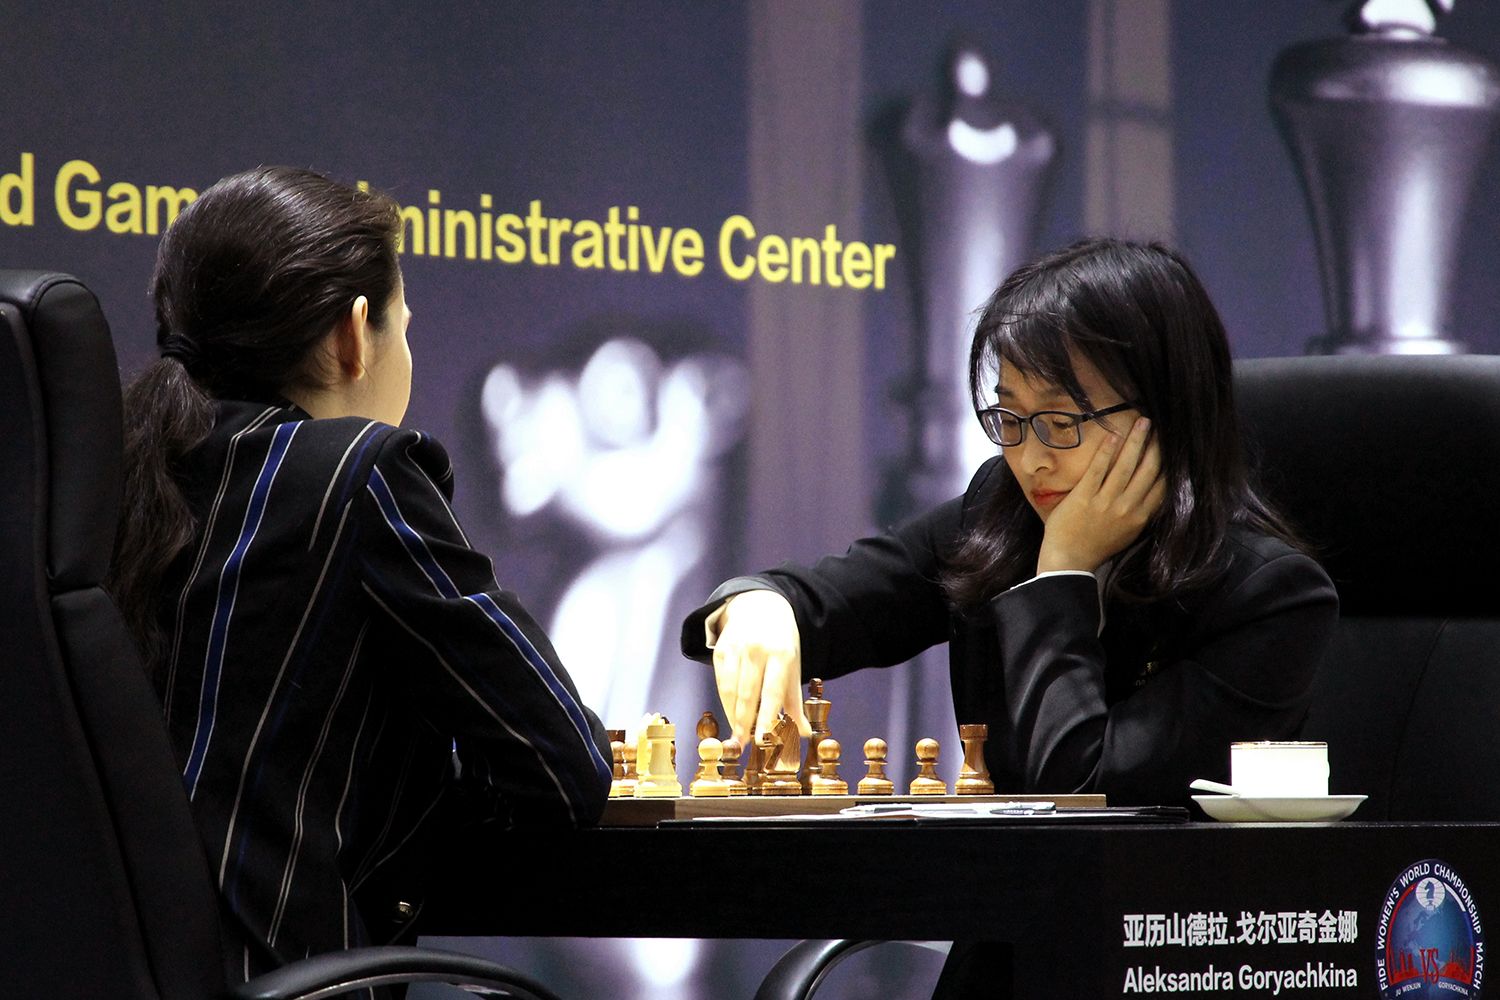 April 2020 World Chess Ratings - Russia's Aleksandra surpasses World Chess  Champion China's Ju Wenjun!